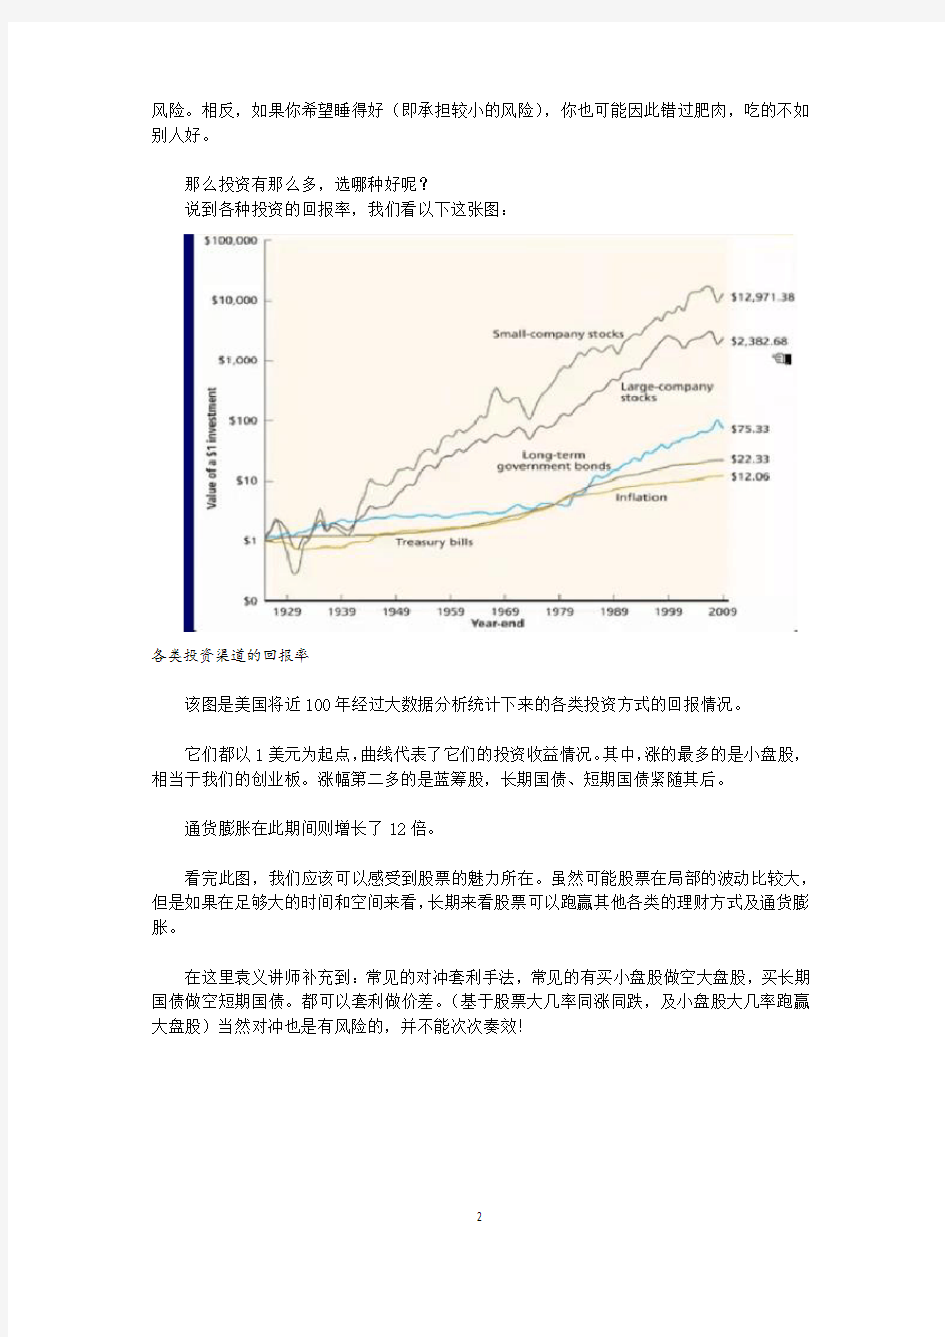 袁义-资本投资回报率和股市历史回报率